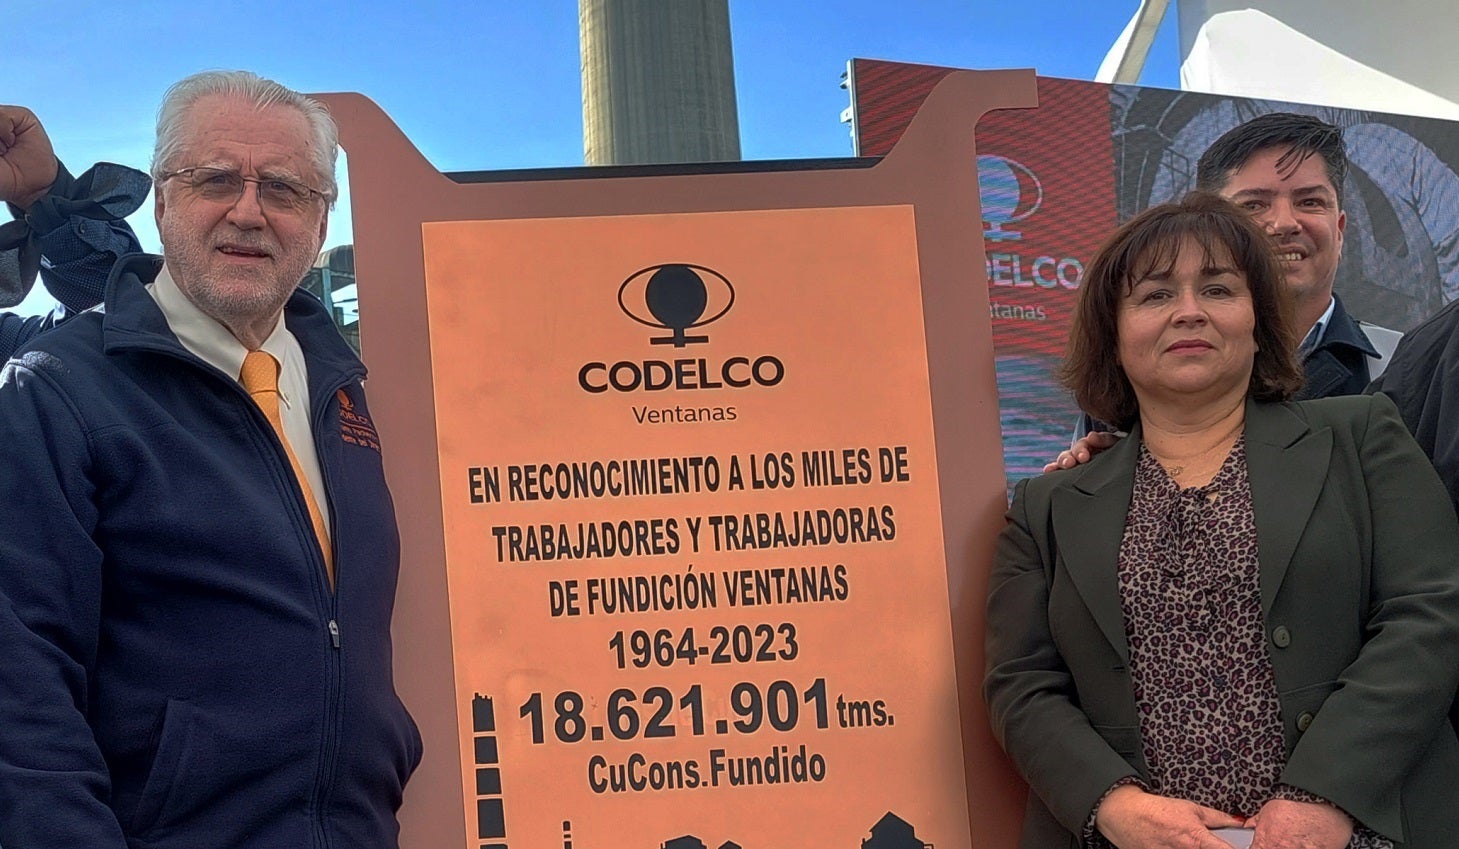 Chilena Codelco cierra fundición de metales Ventanas